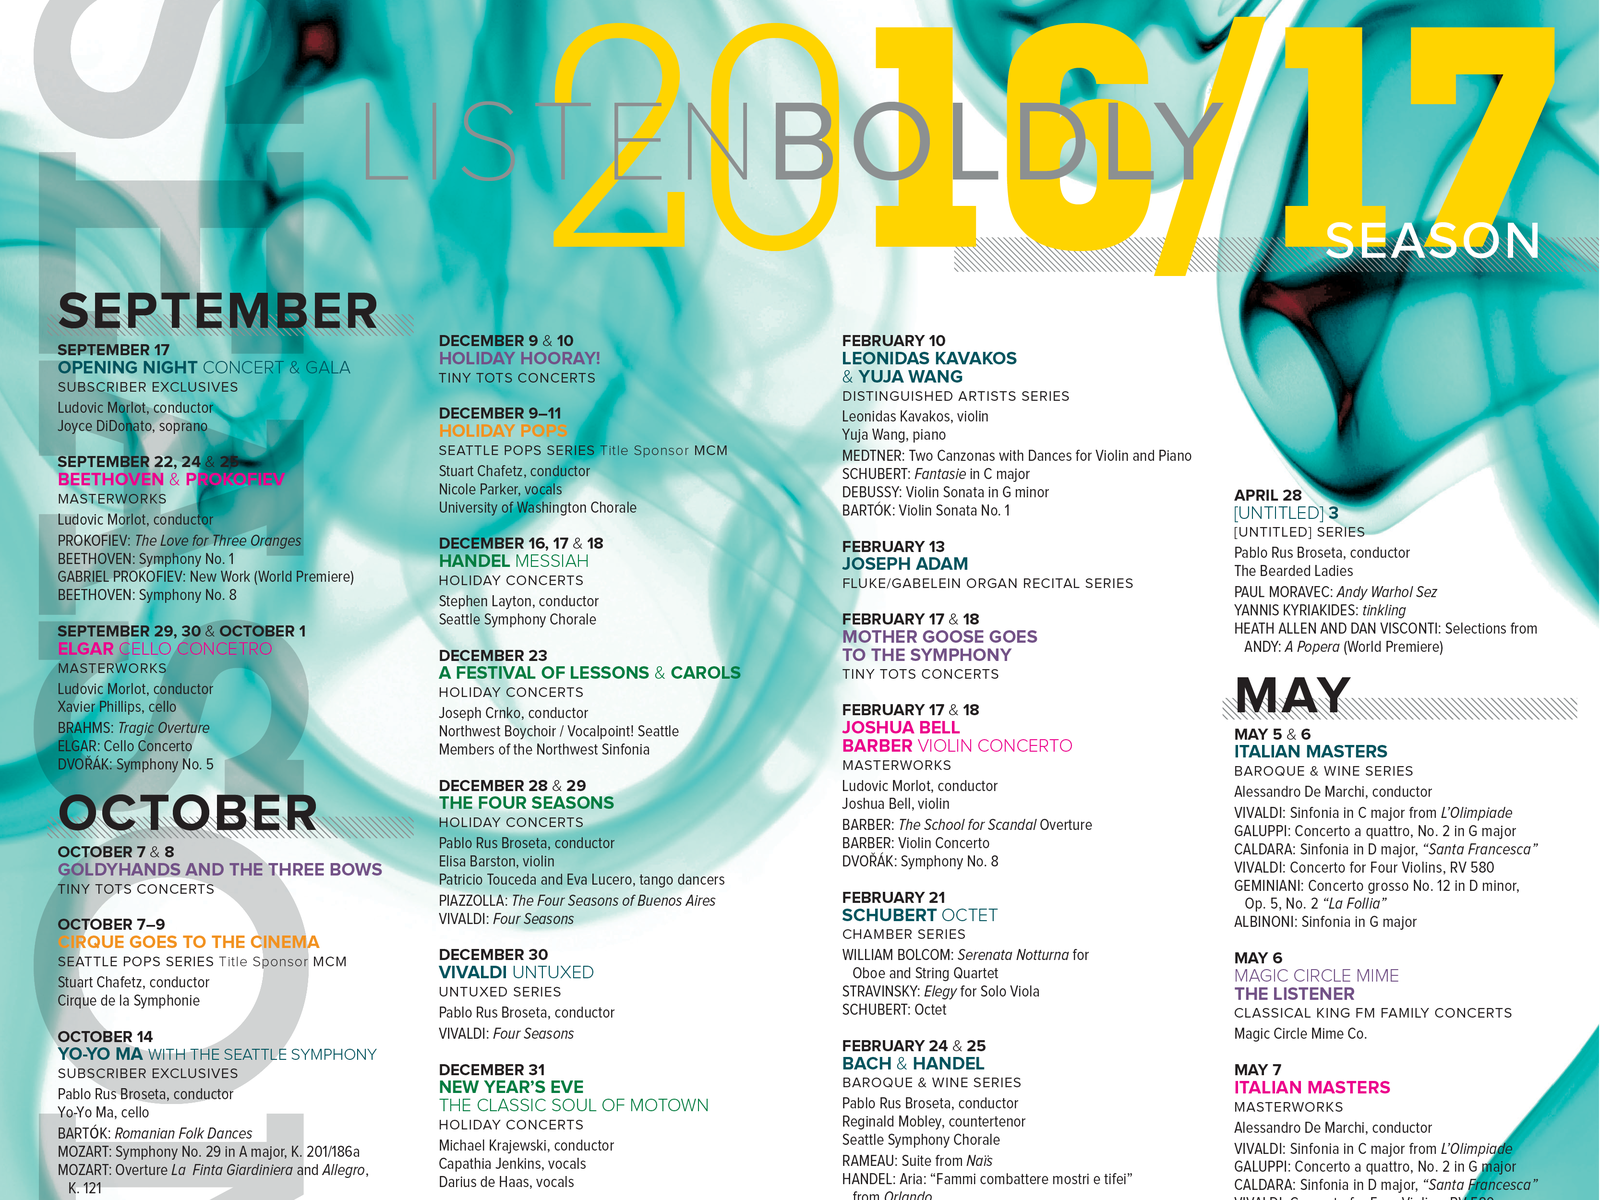 Seattle Symphony Season Calendar by Helen Wight on Dribbble